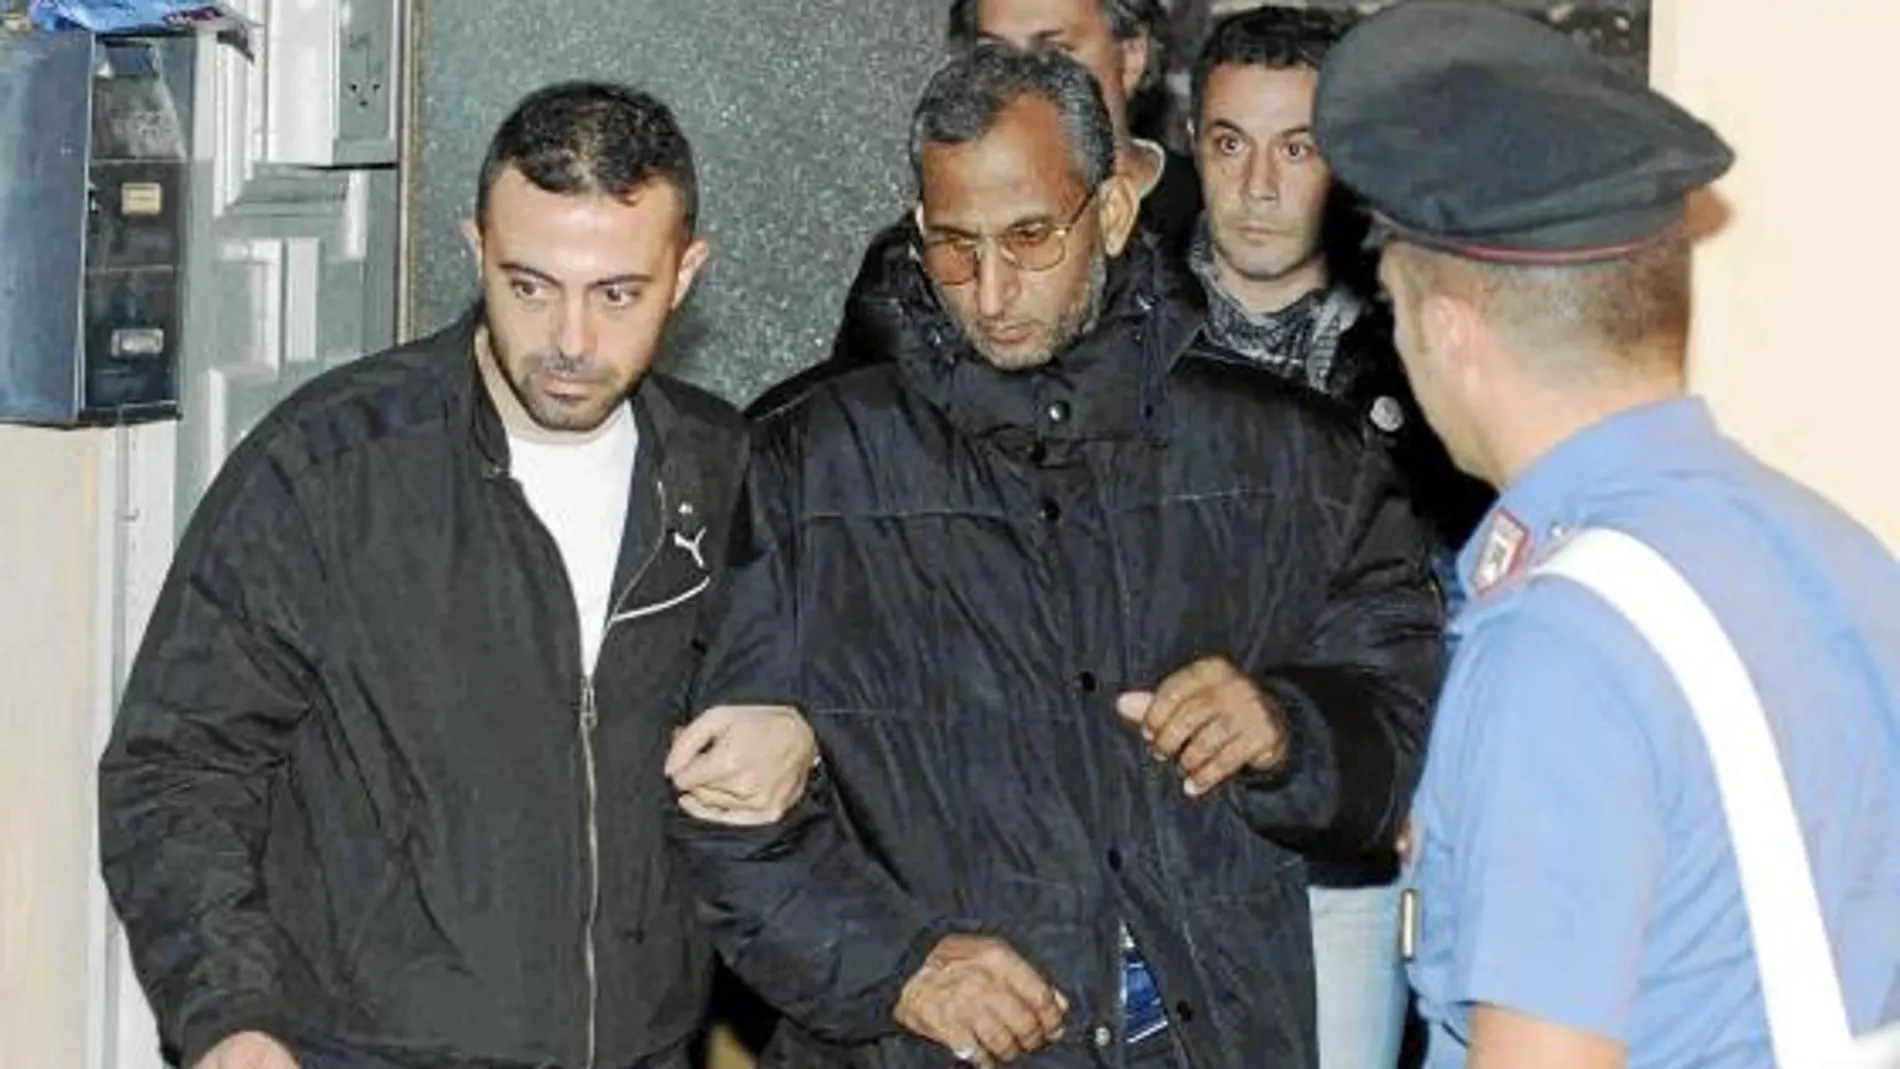 El argelino arrestado en Nápoles tiene lazos con los detenidos galos